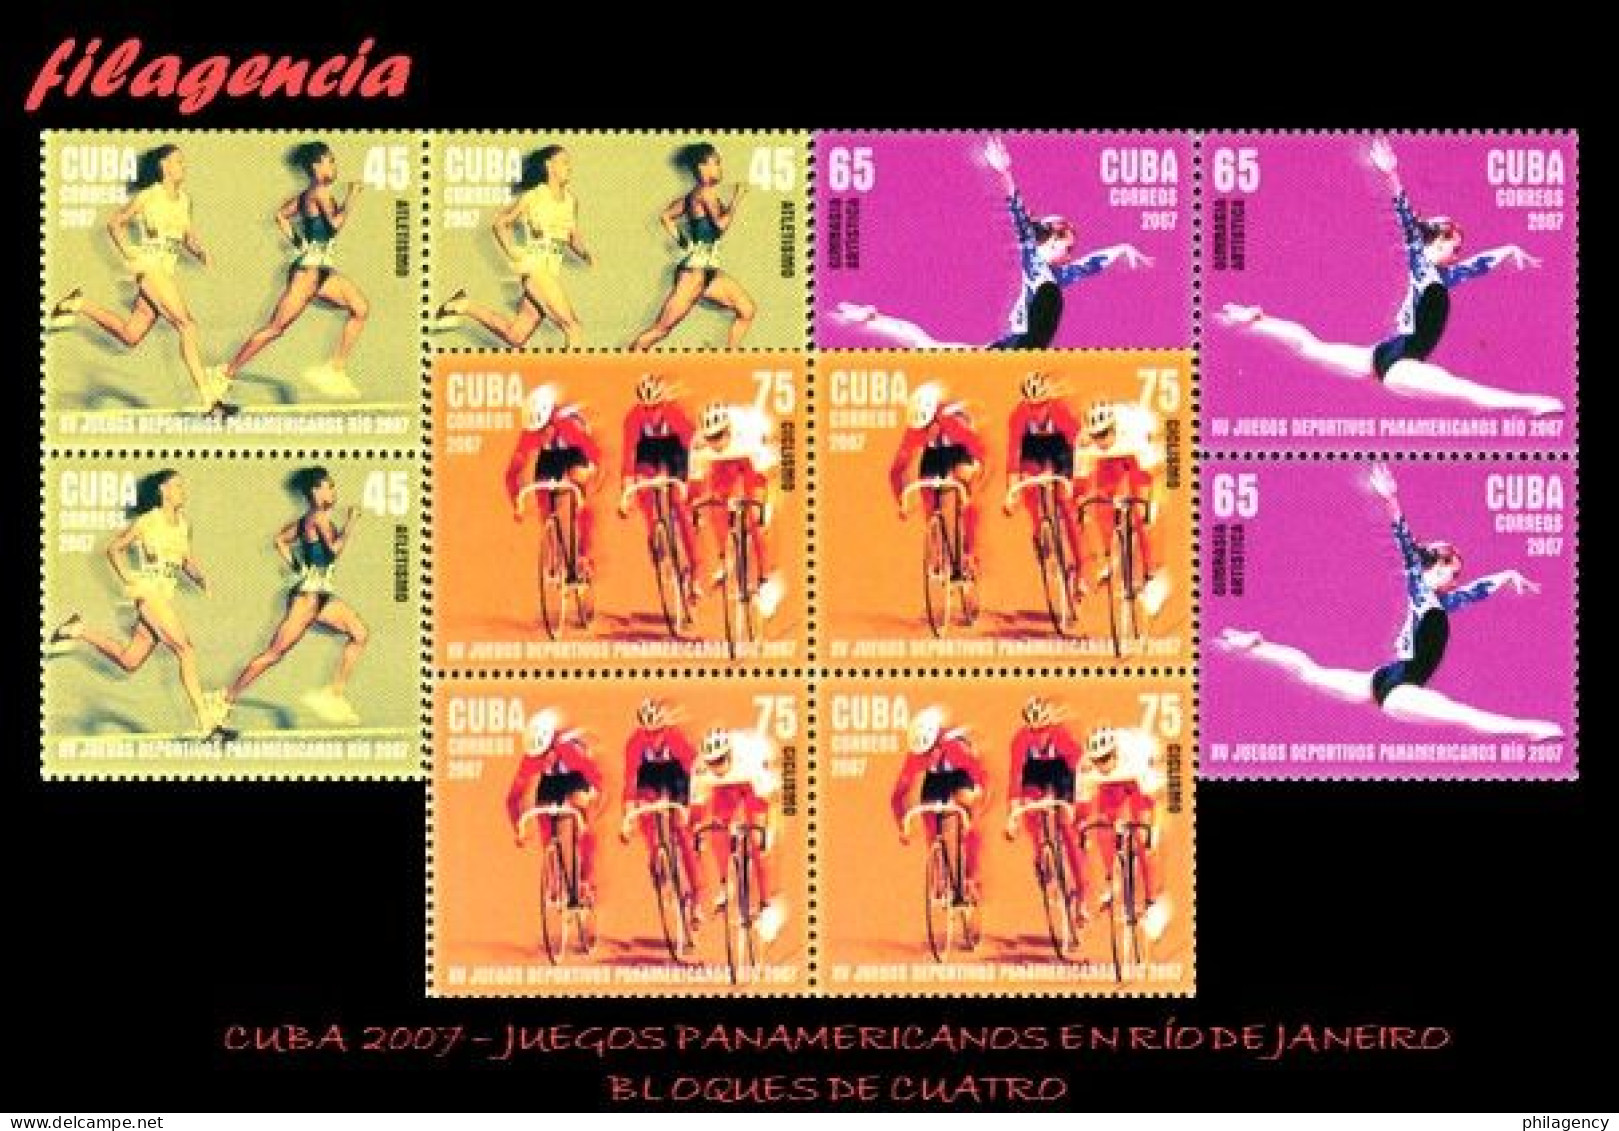 CUBA. BLOQUES DE CUATRO. 2007-21 JUEGOS PANAMERICANOS EN RÍO DE JANEIRO - Unused Stamps